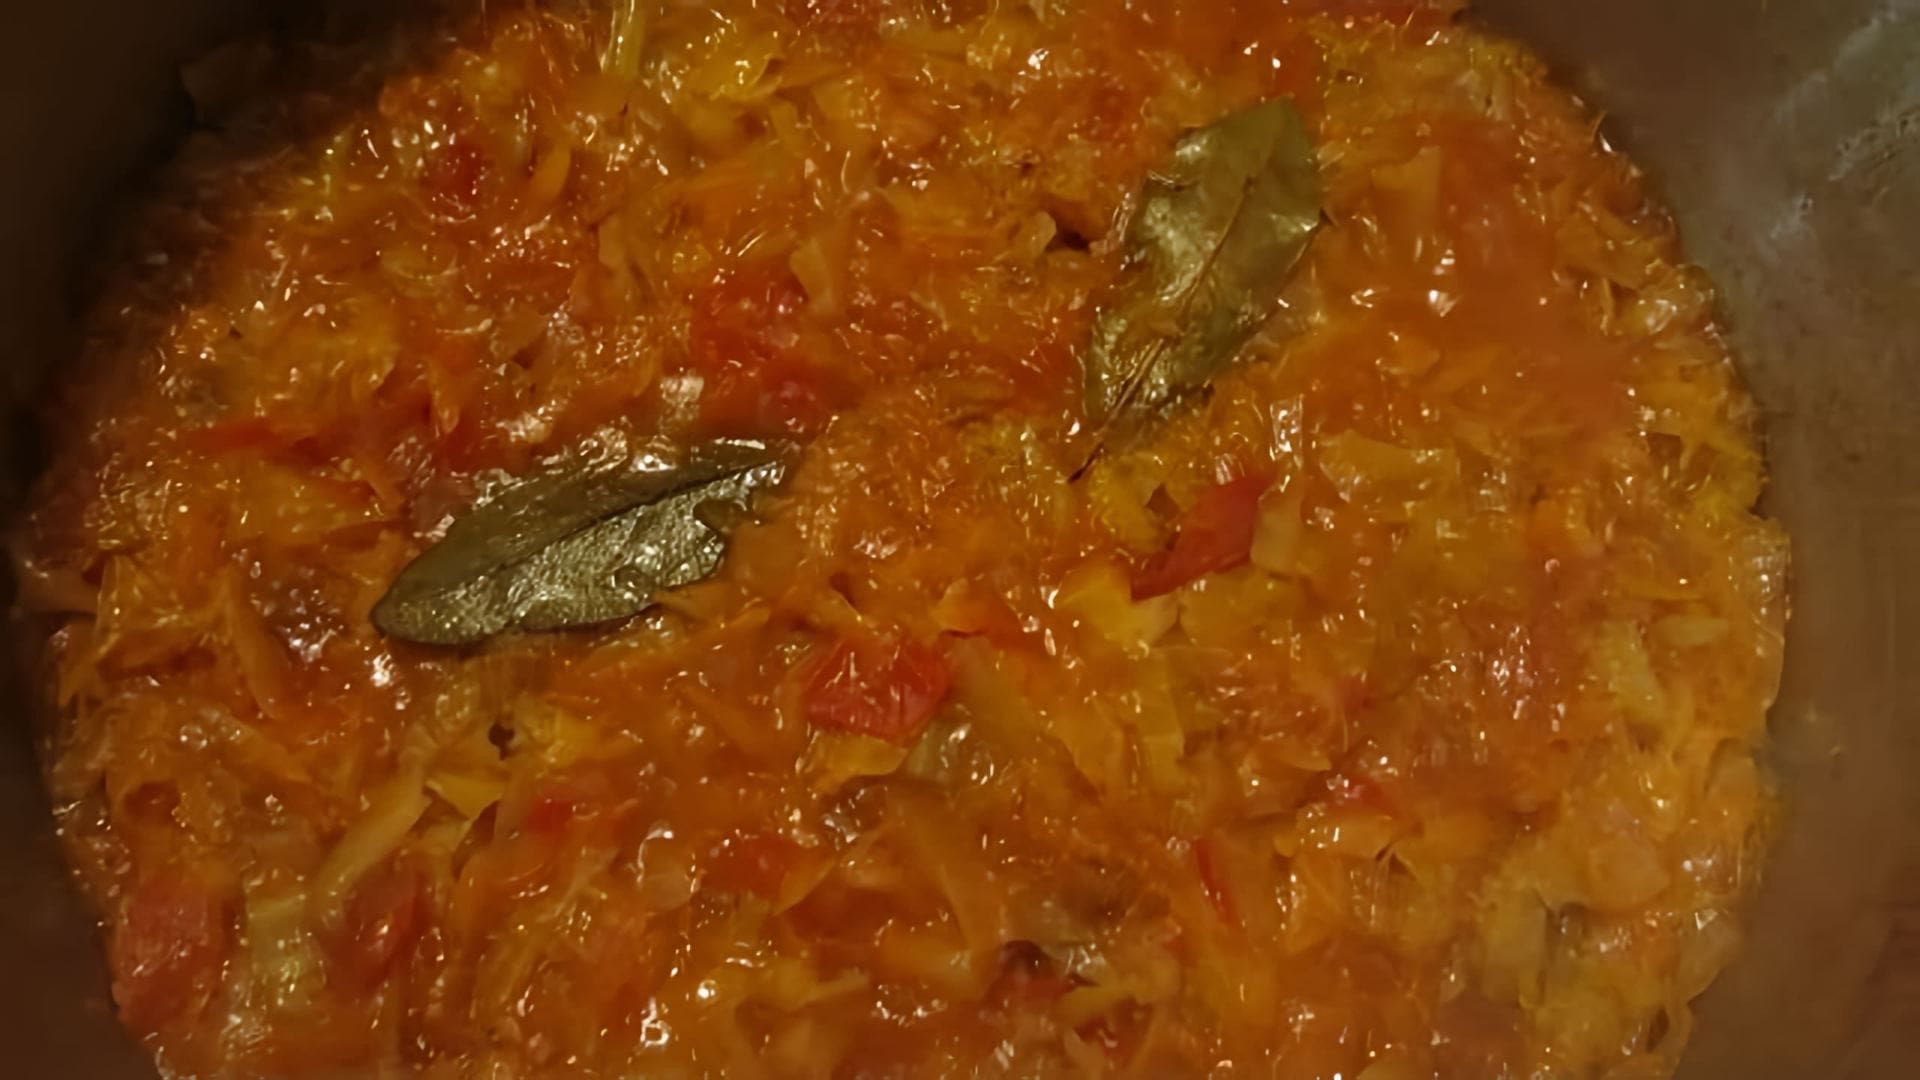 Видео рецепт солянки - русского квашеного овощного супа, приготовленного с использованием свежей капусты